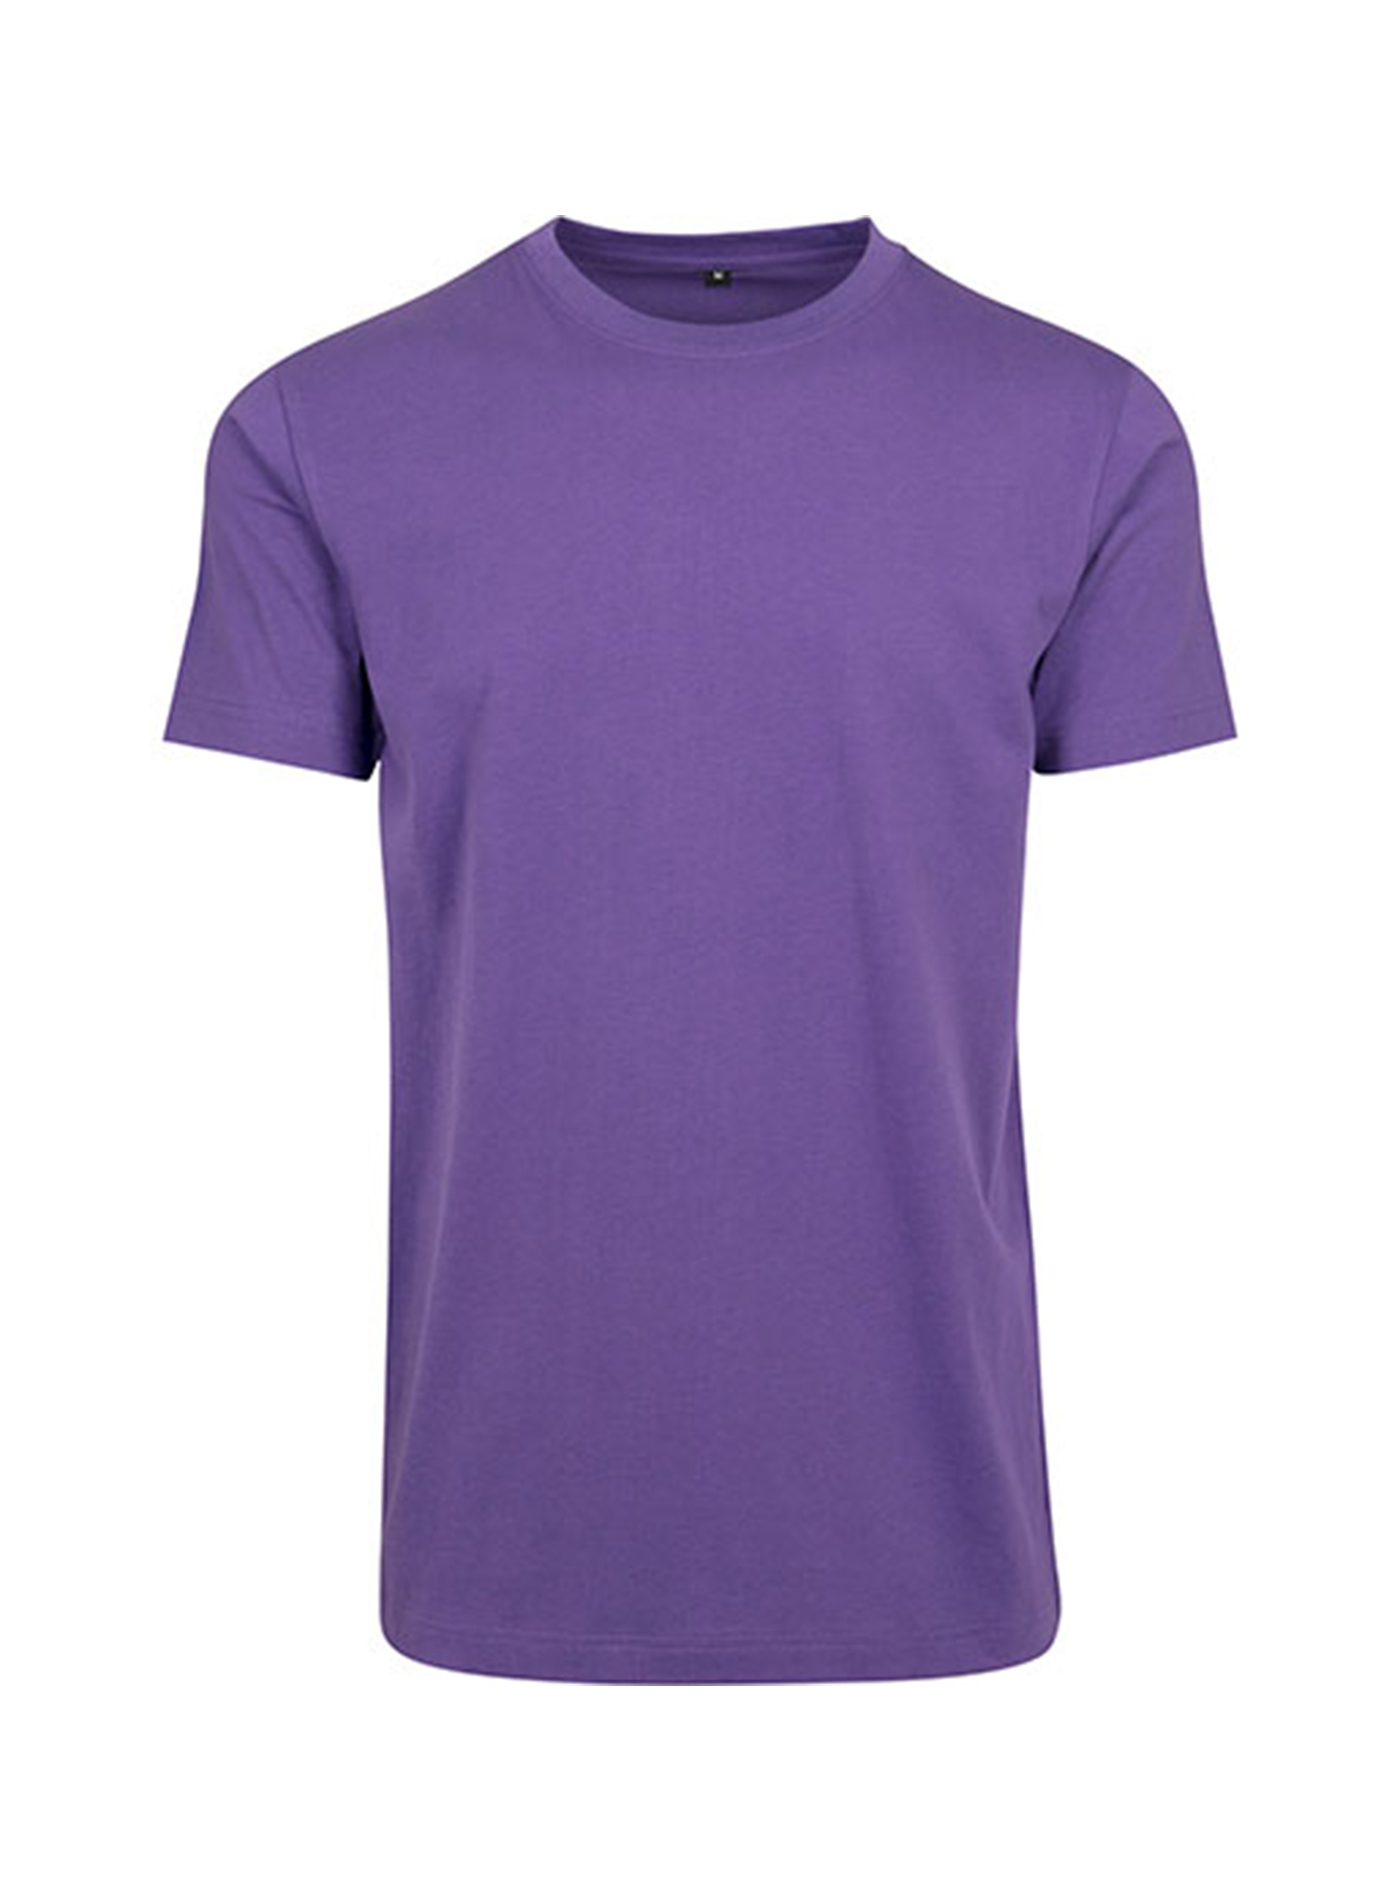 Pánské tričko Round Neck - Tmavě fialová XL